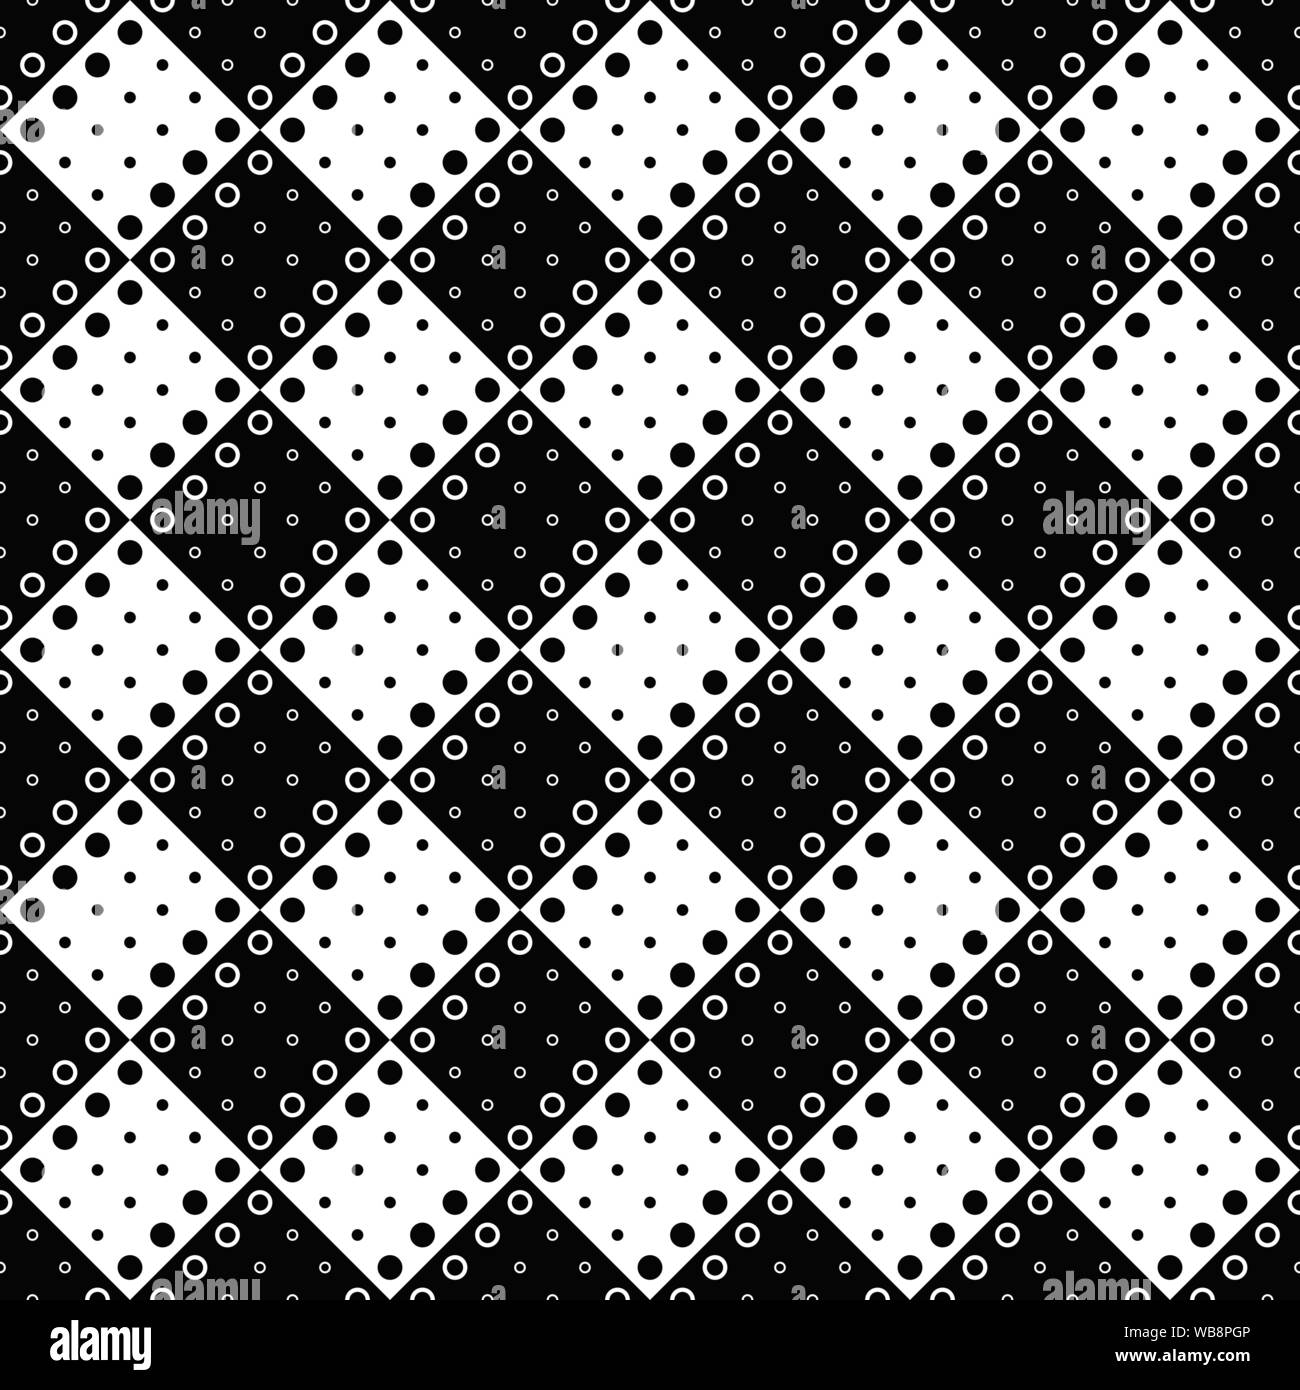 Kreis Muster Hintergrund - schwarz weiß Vektorgrafik von Dots und Kreise Stock Vektor